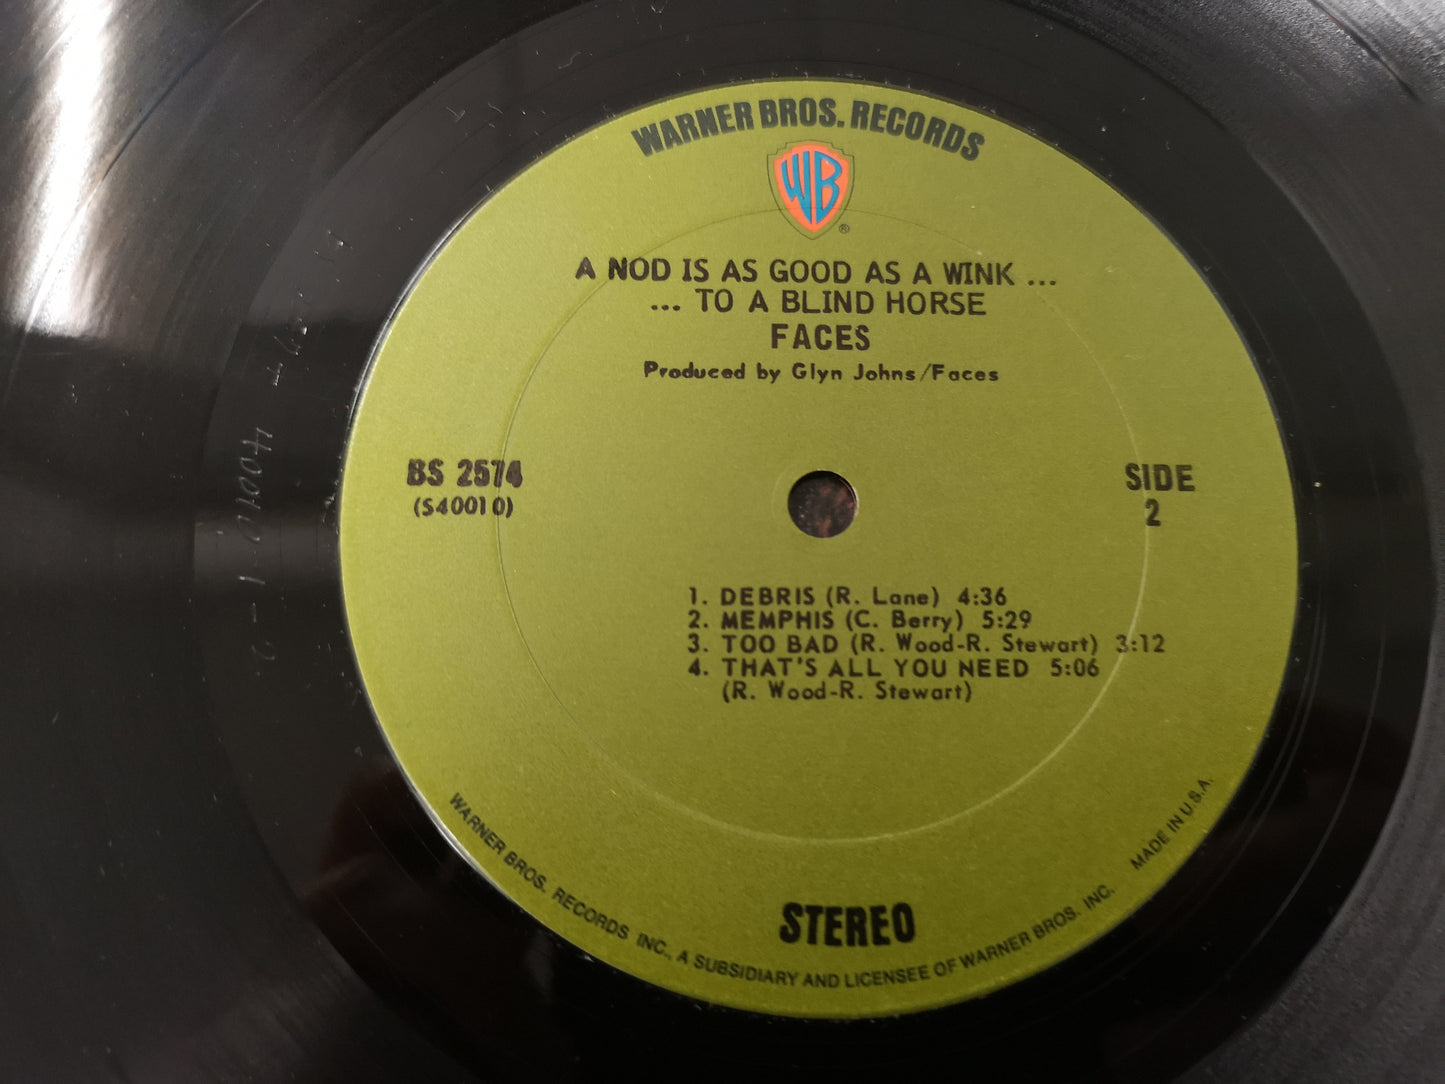 Faces "A Nod Is As Good As a Wink" Orig US 1971 VG++/VG++